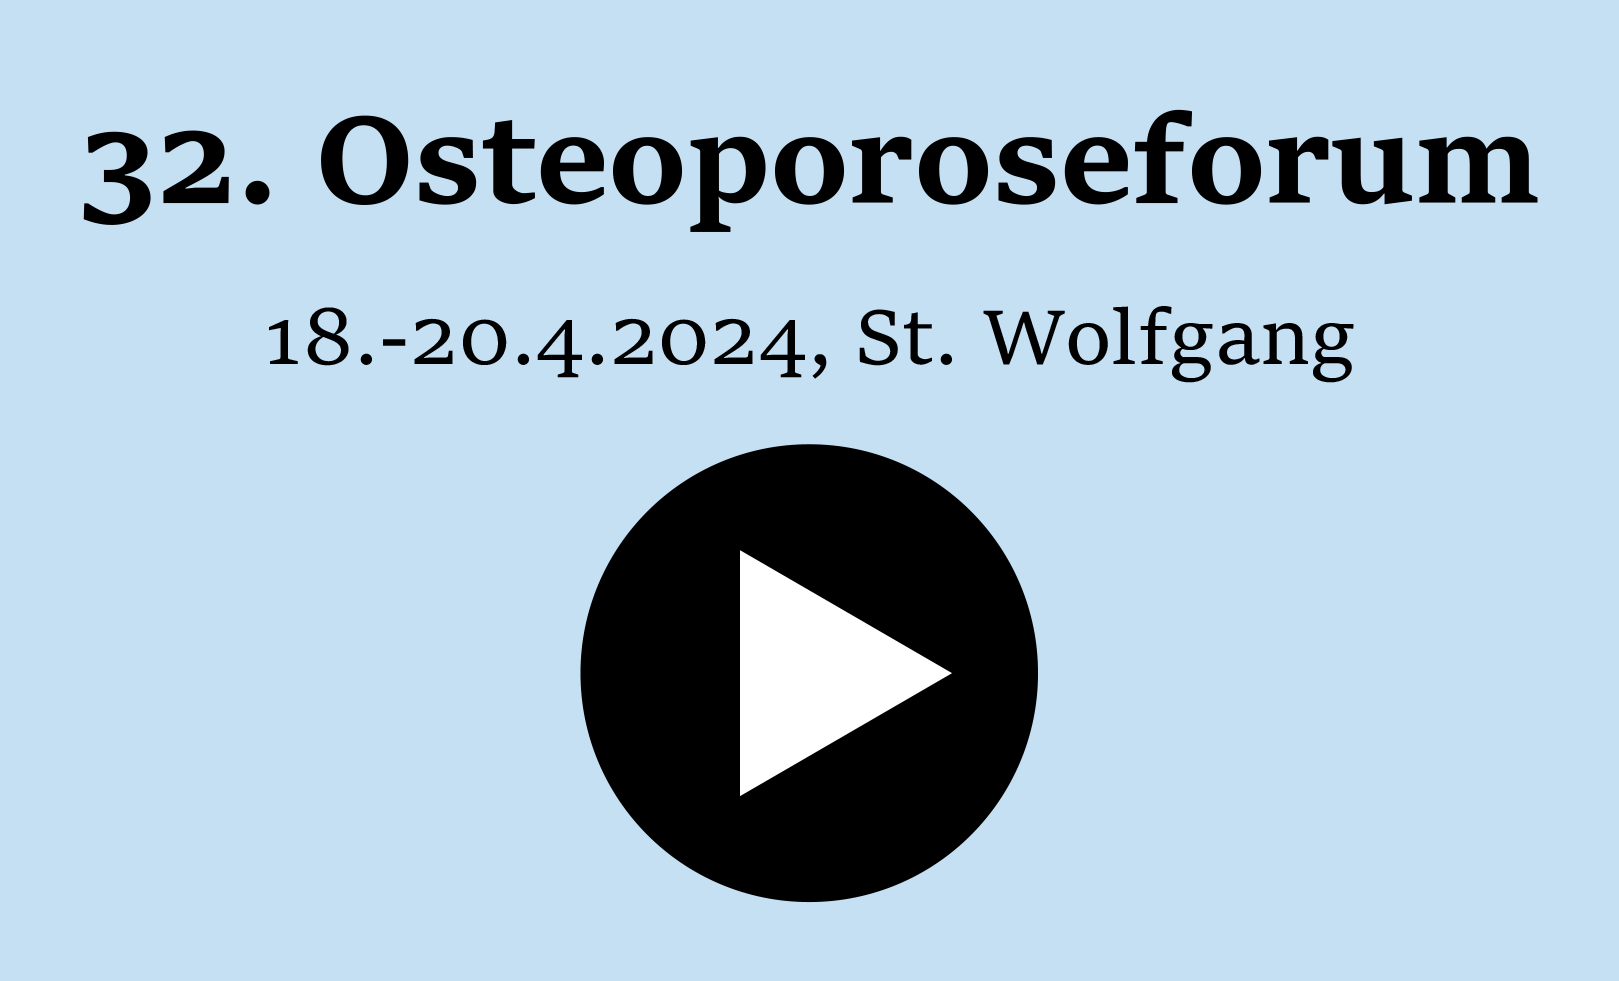 Osteoporoseforum St. Wolfgang